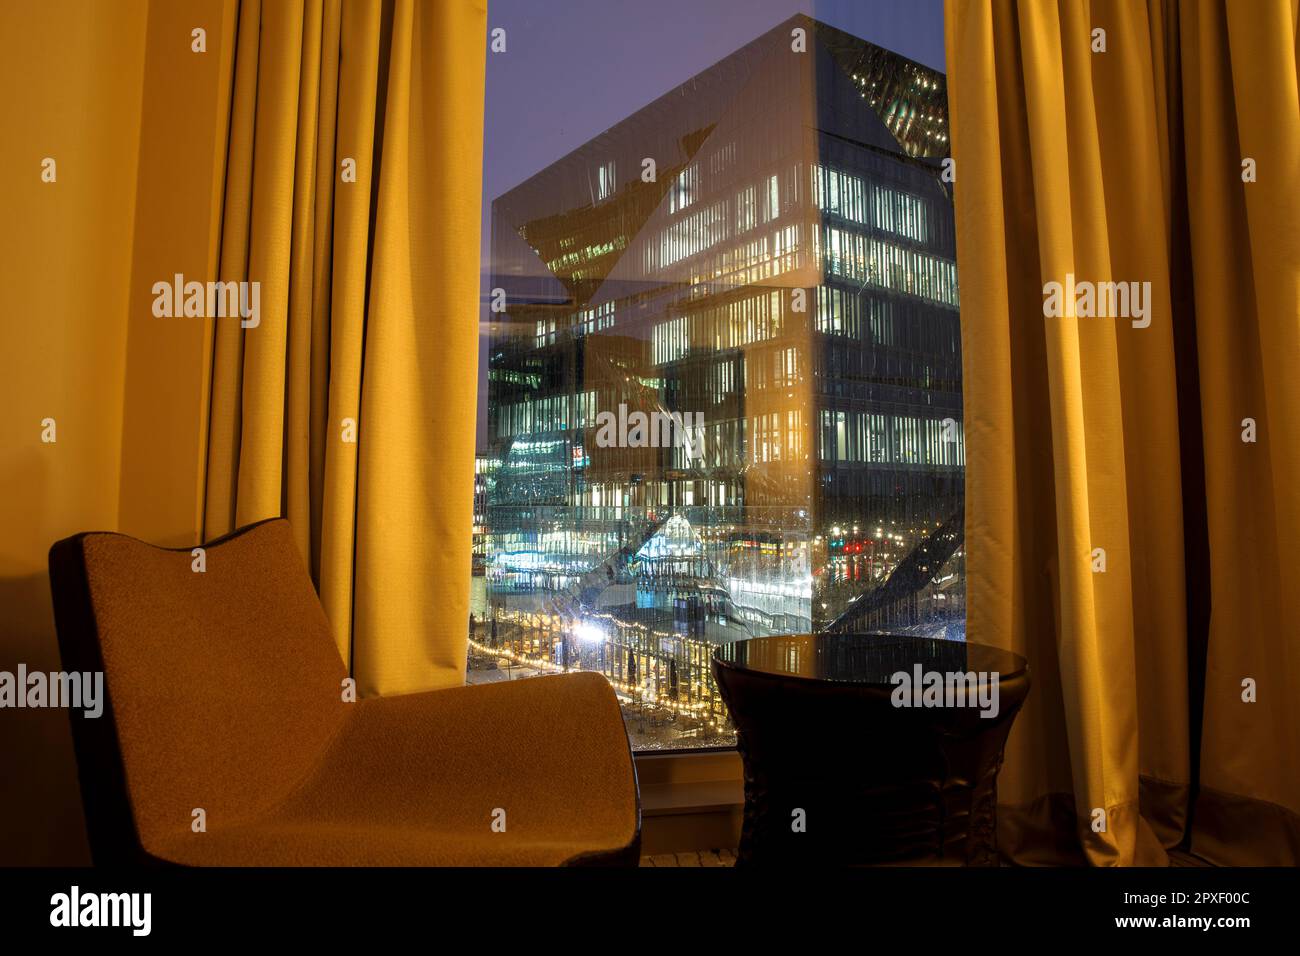 Vue de la chambre de l'hôtel Steigenberger au Cube Berlin, immeuble de bureaux en forme de cube sur la place Washington près de la gare centrale, Berlin, Allemagne. Banque D'Images